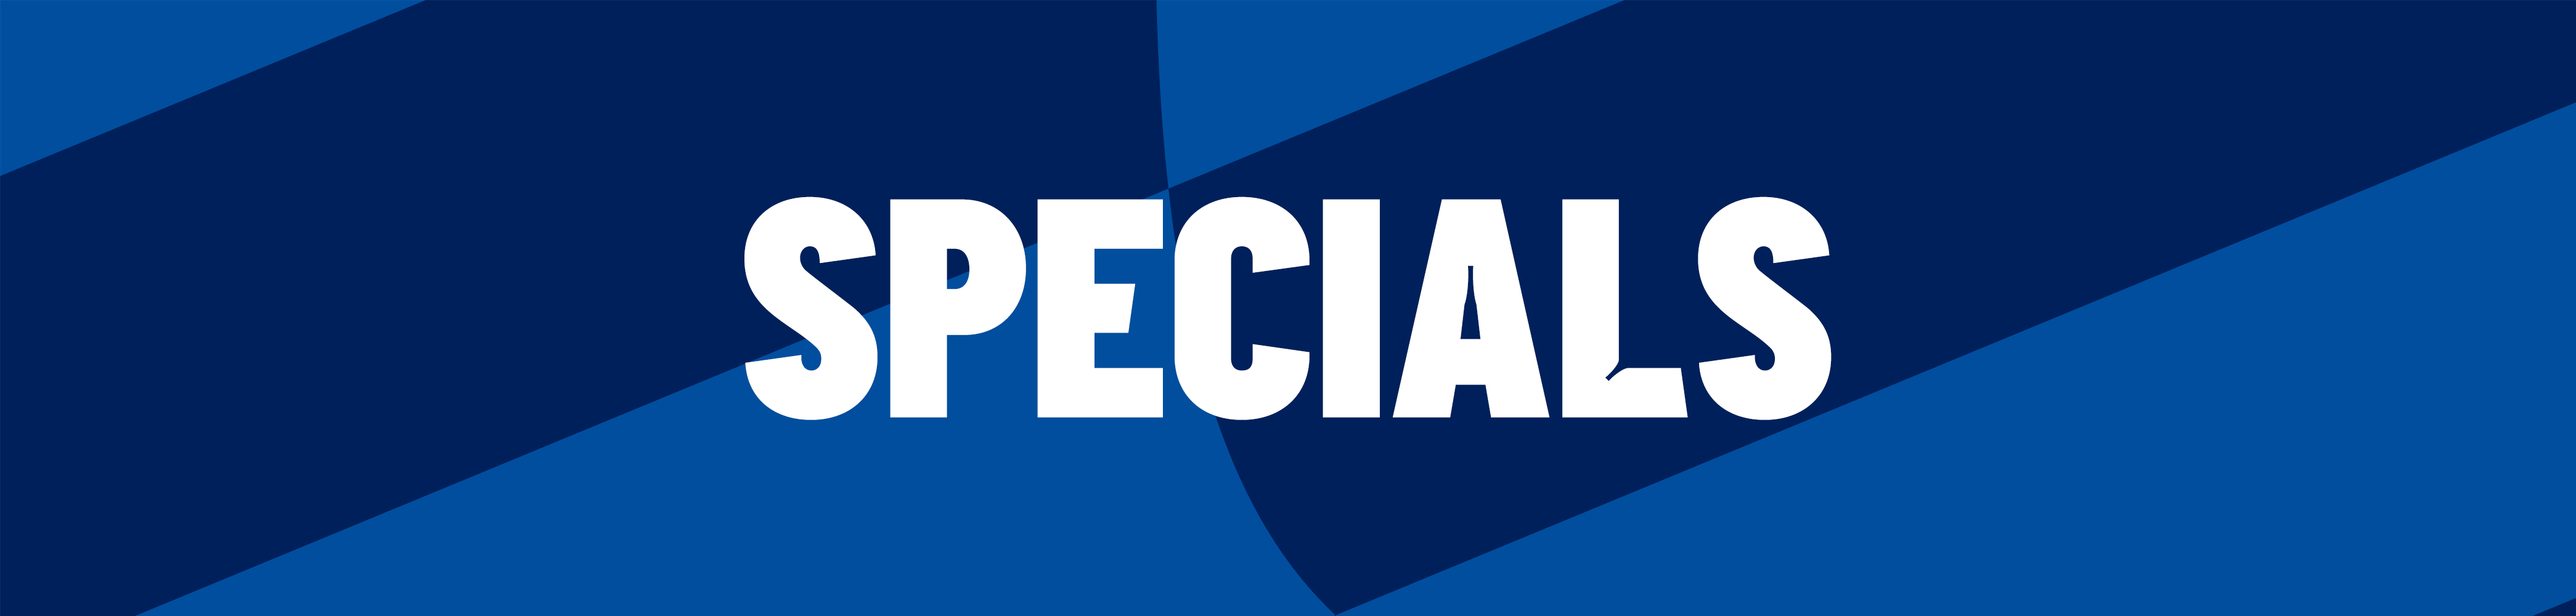 Specials_hero_desktop